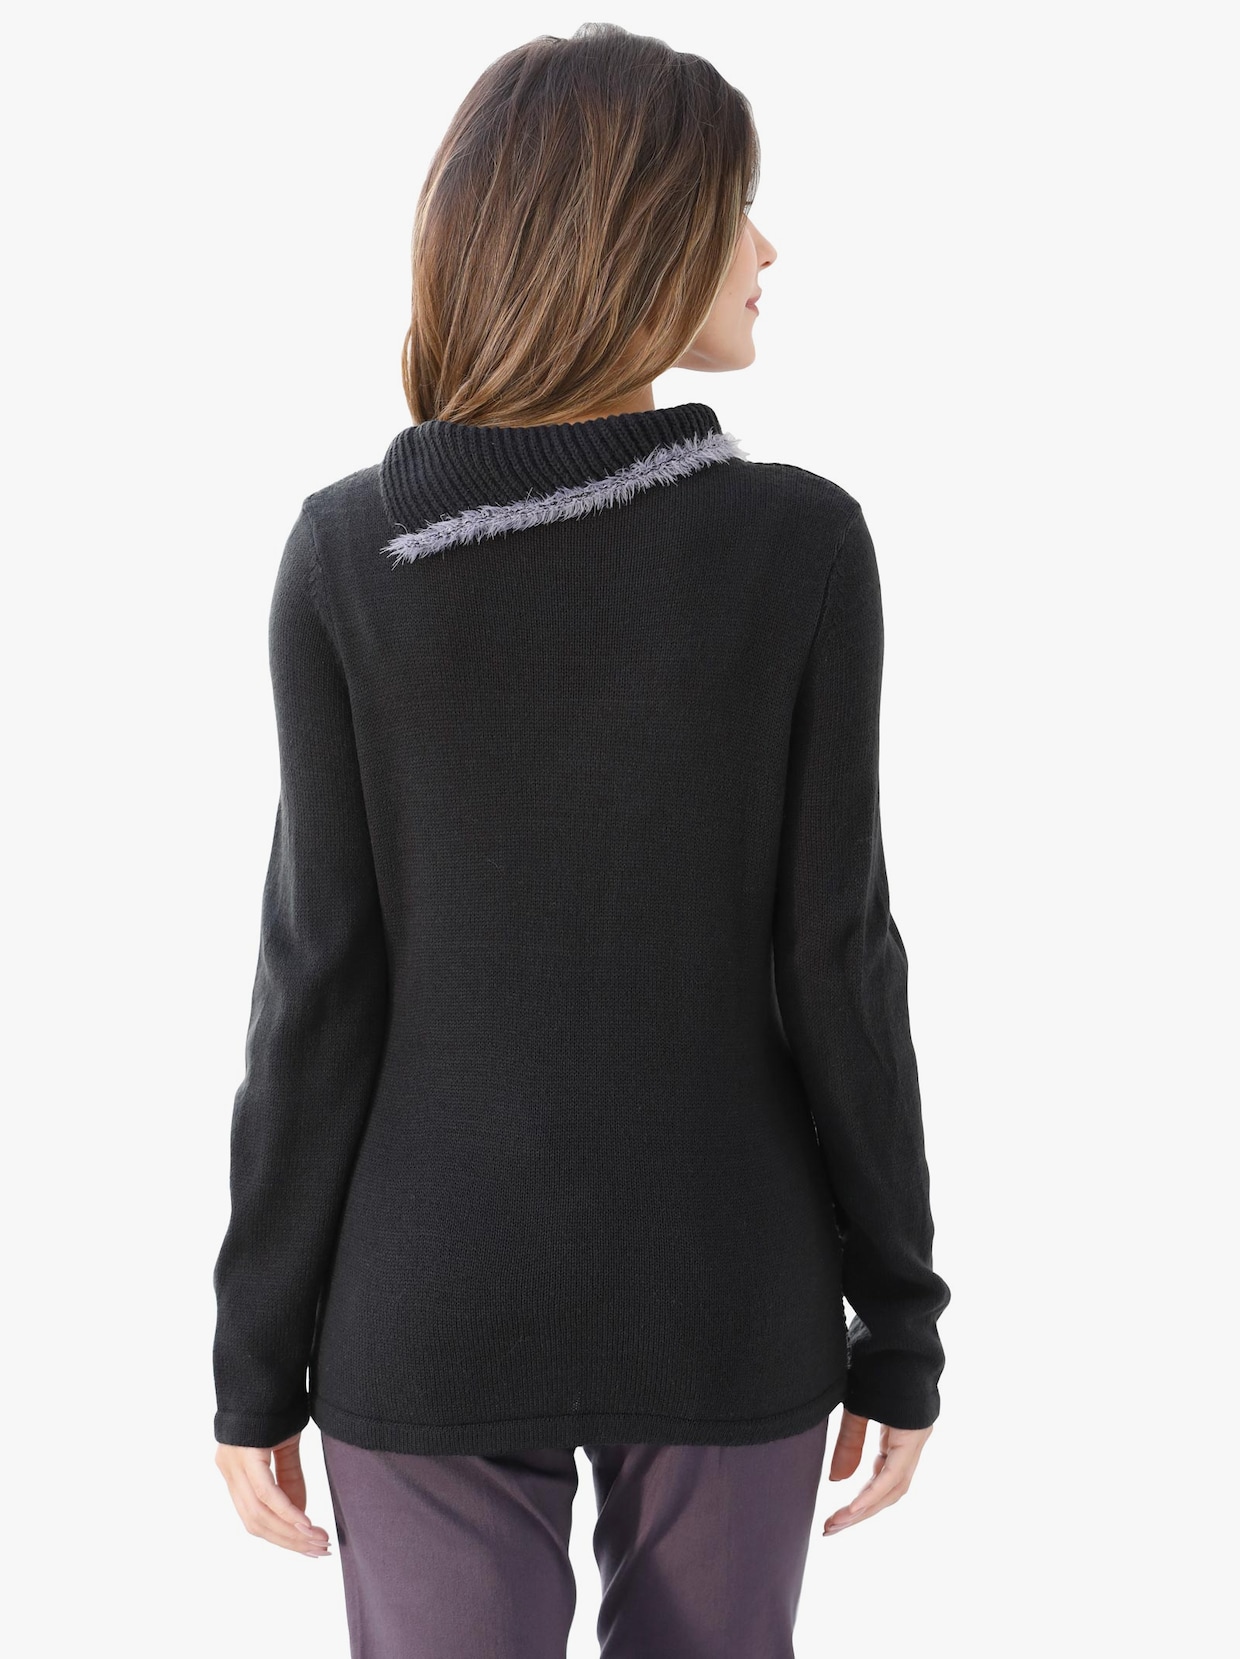 Pullover met lange mouwen - zwart/paars gedessineerd